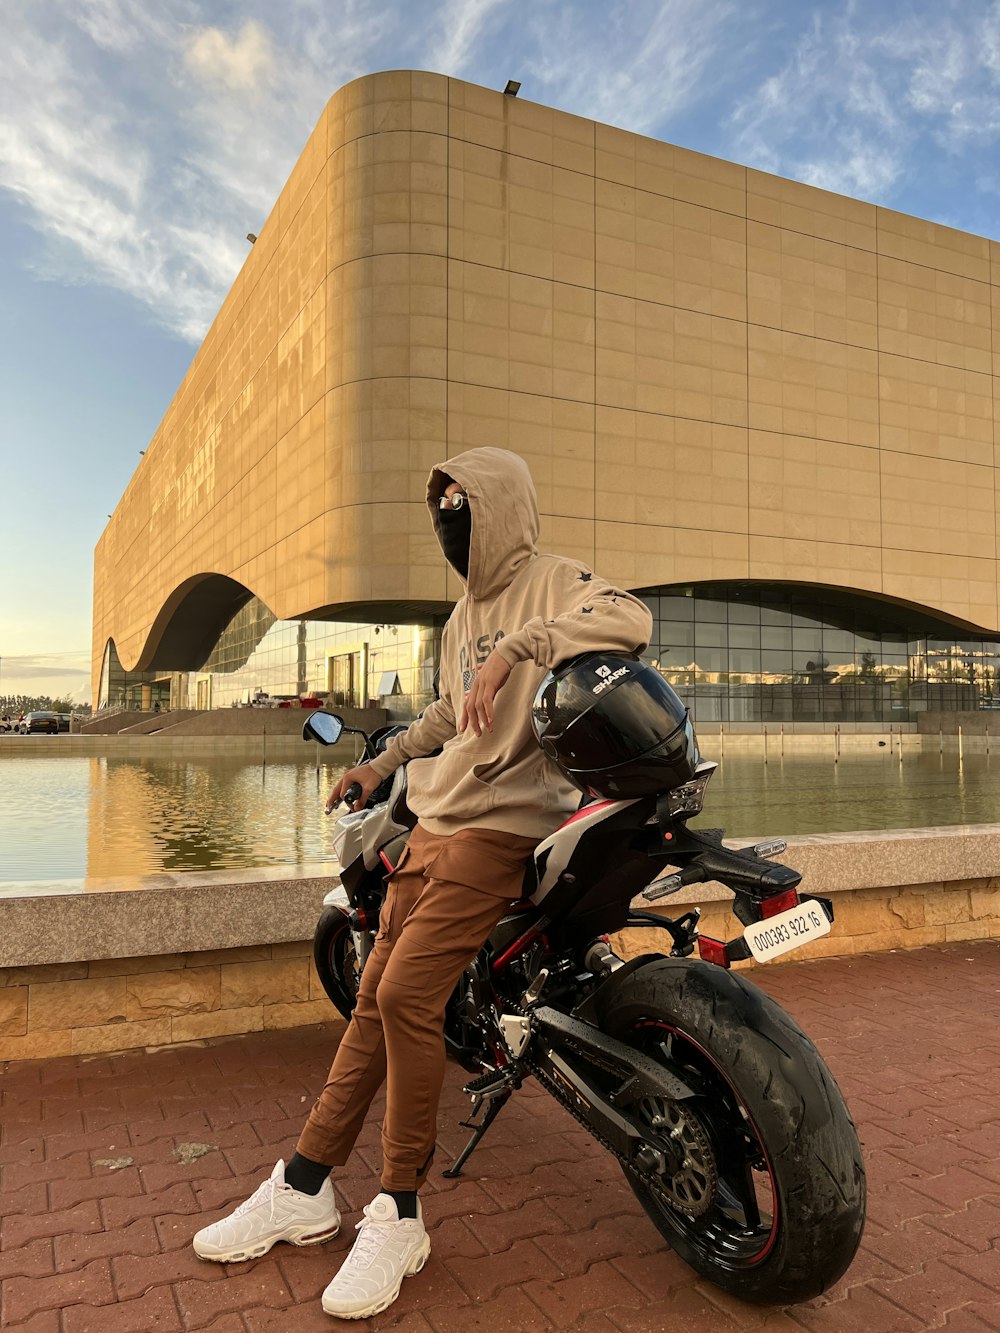 Un homme assis sur une moto devant un immeuble